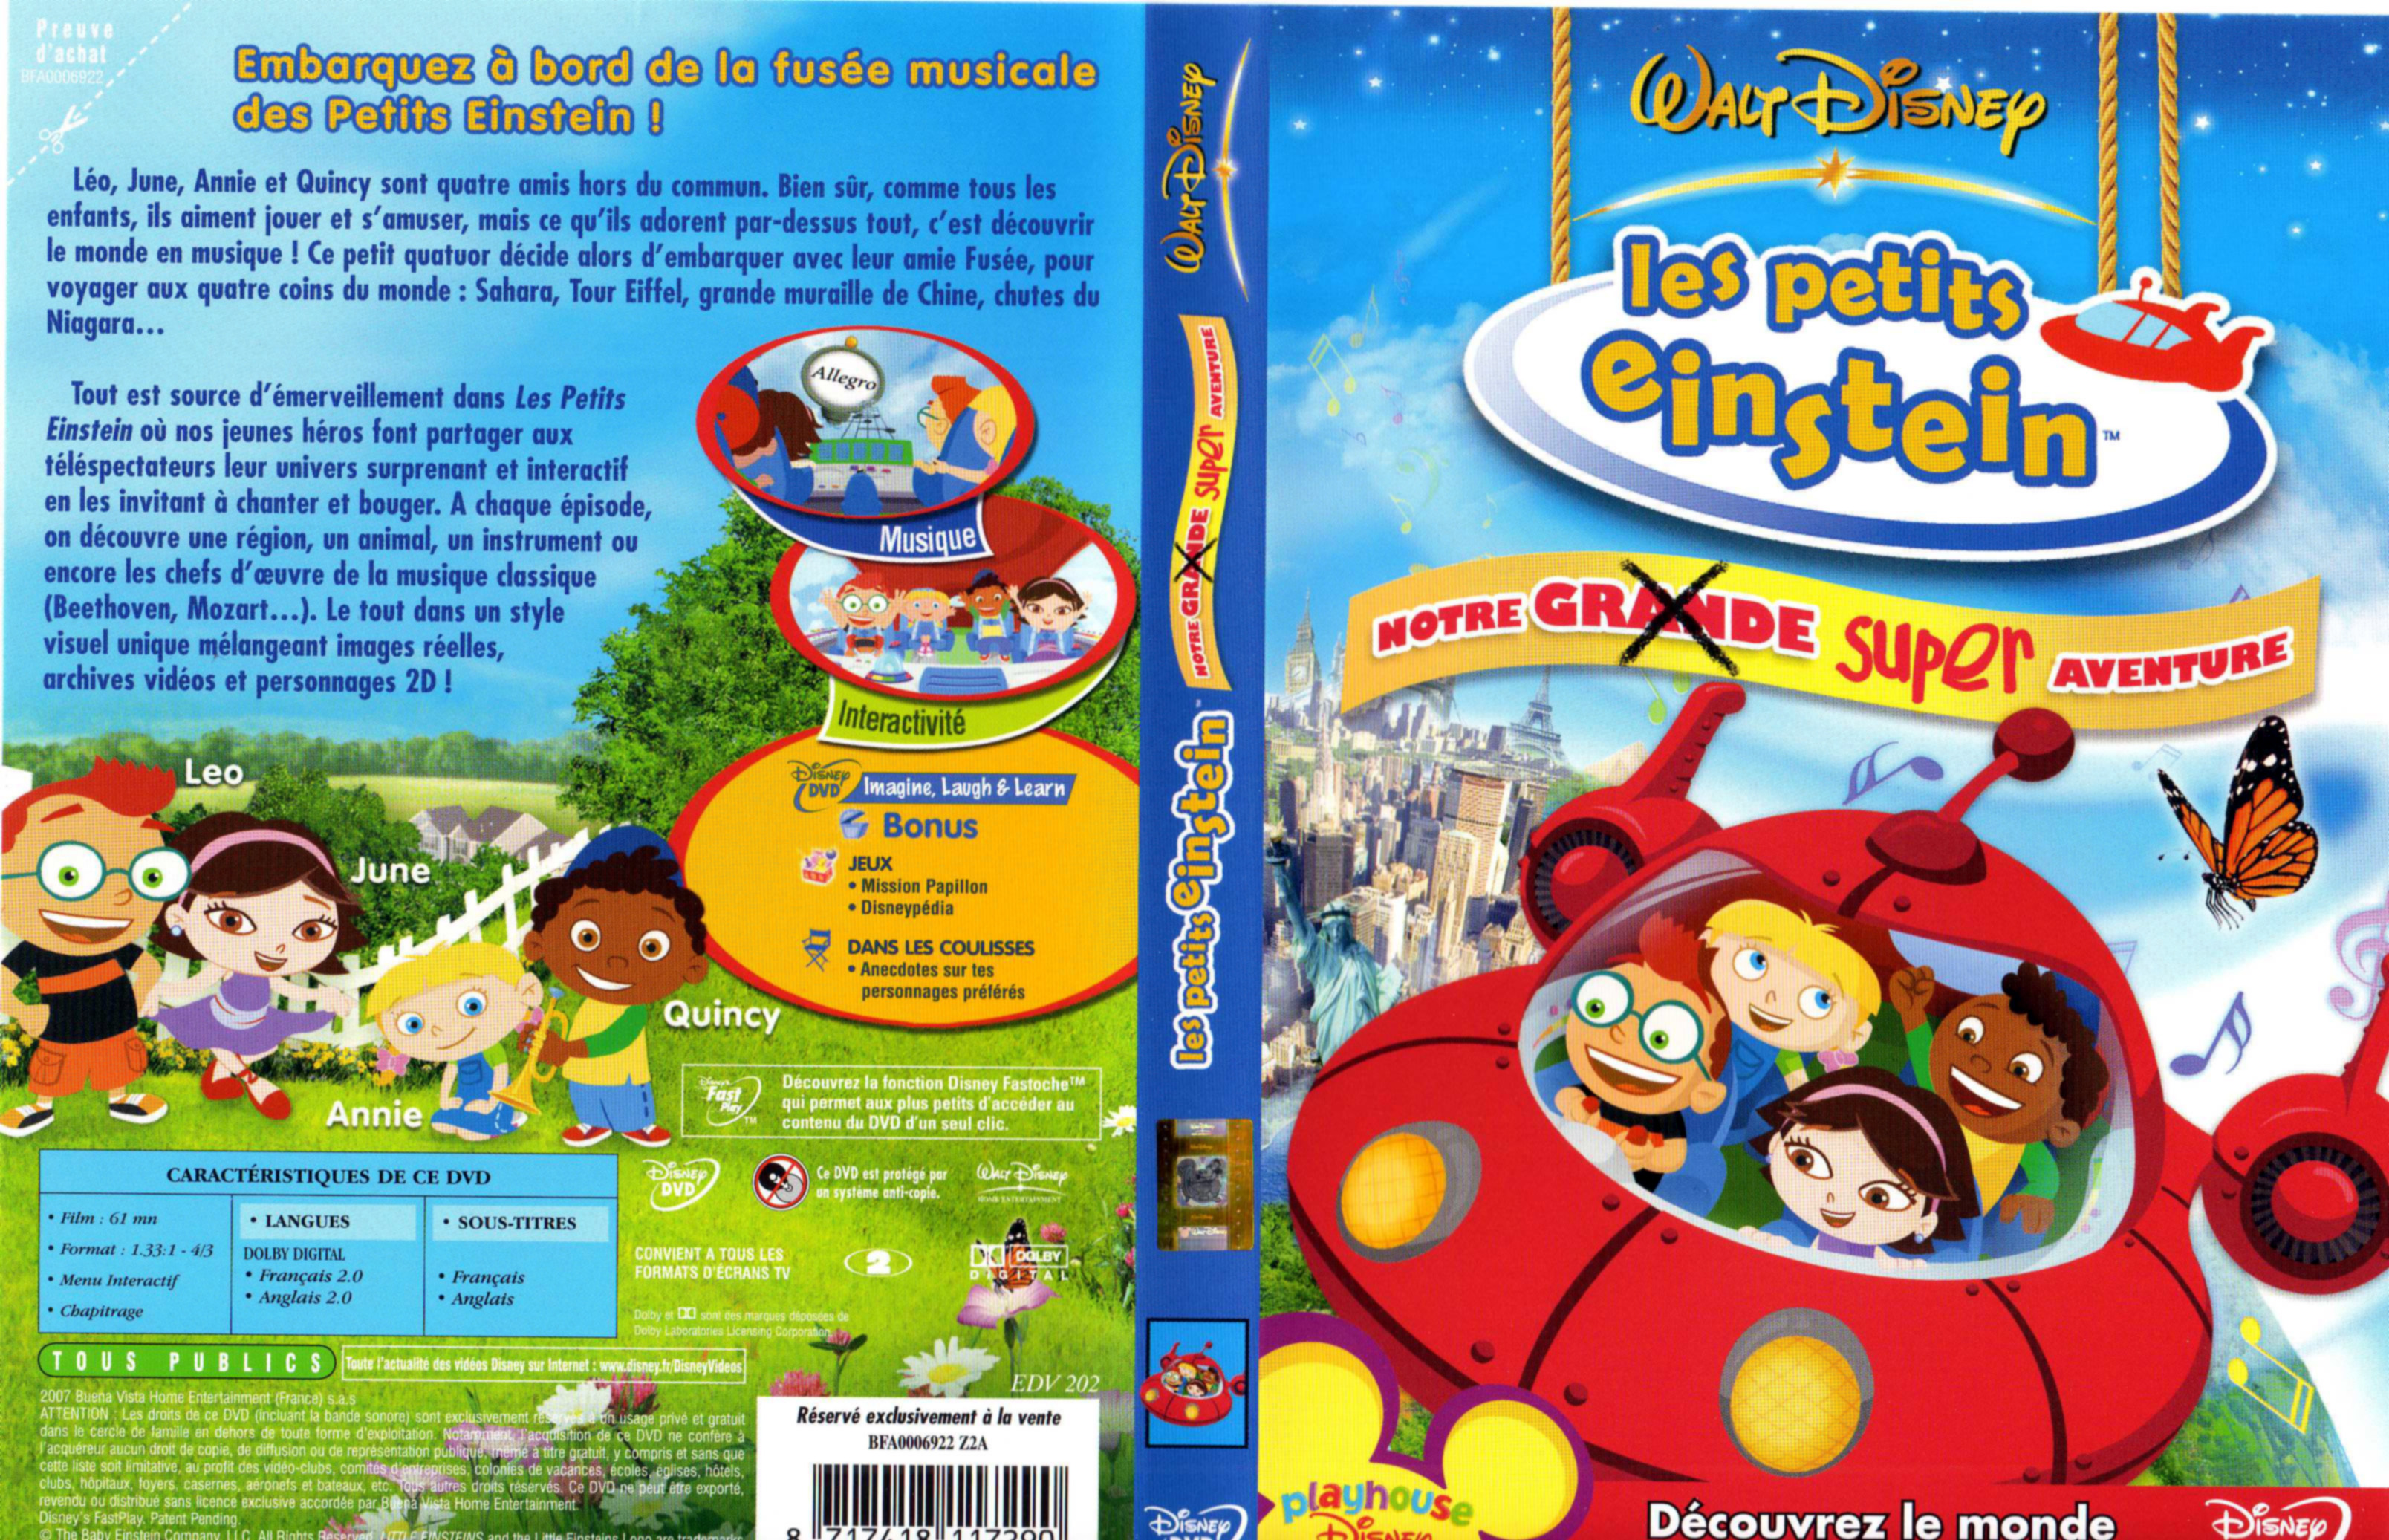 Jaquette DVD Les petits einstein - Notre super aventure